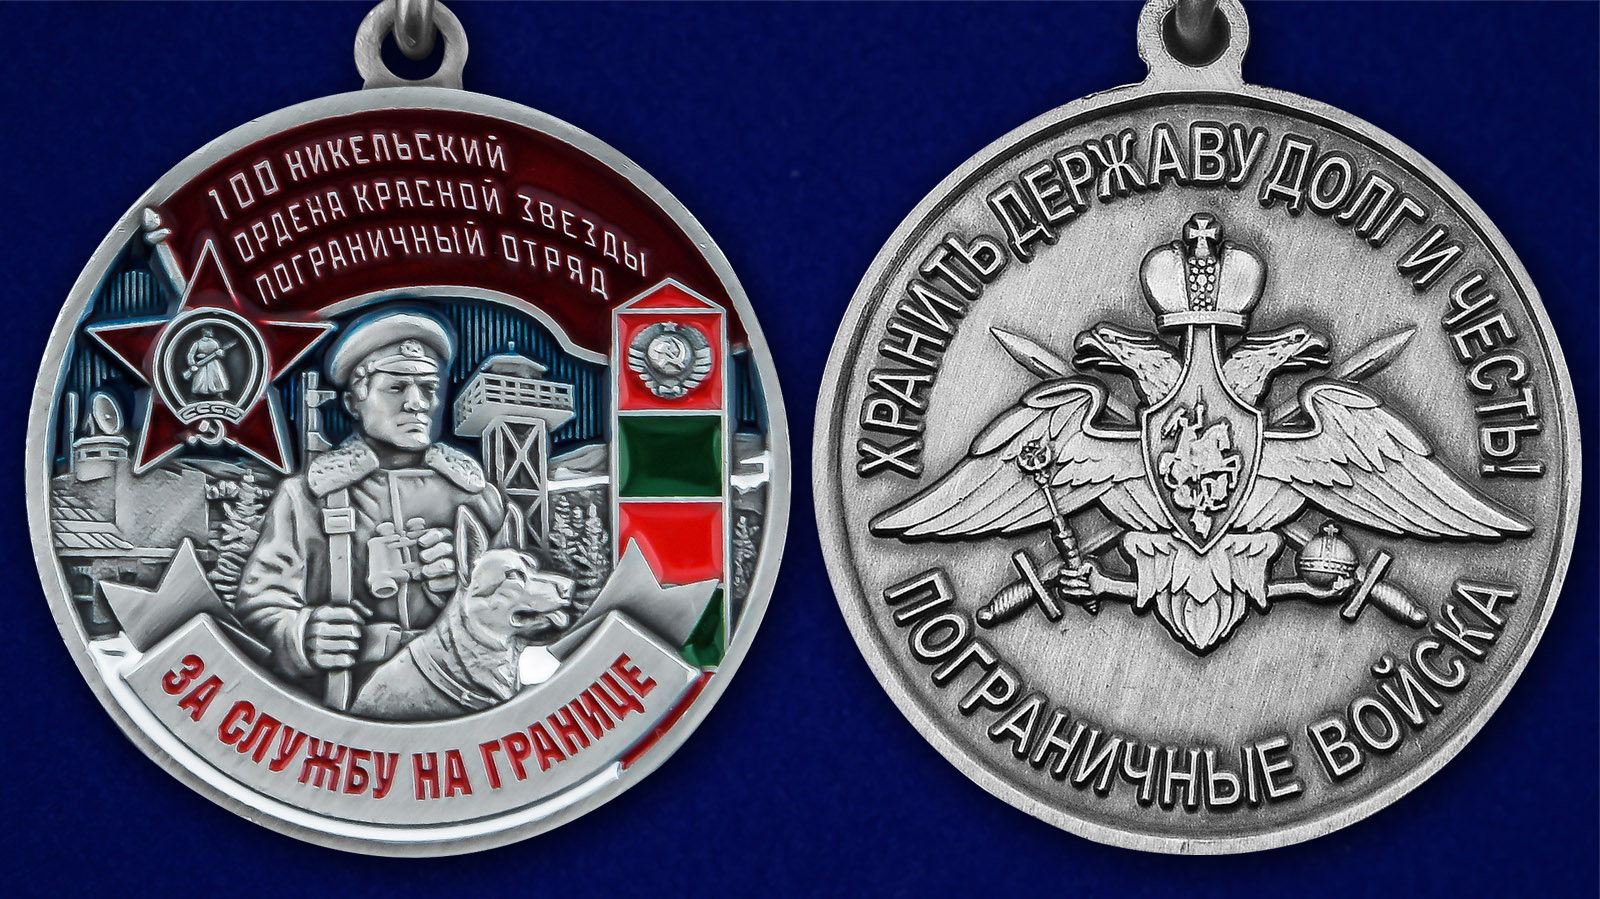 Описание медали "За службу в Никельском пограничном отряде" - аверс и реверс